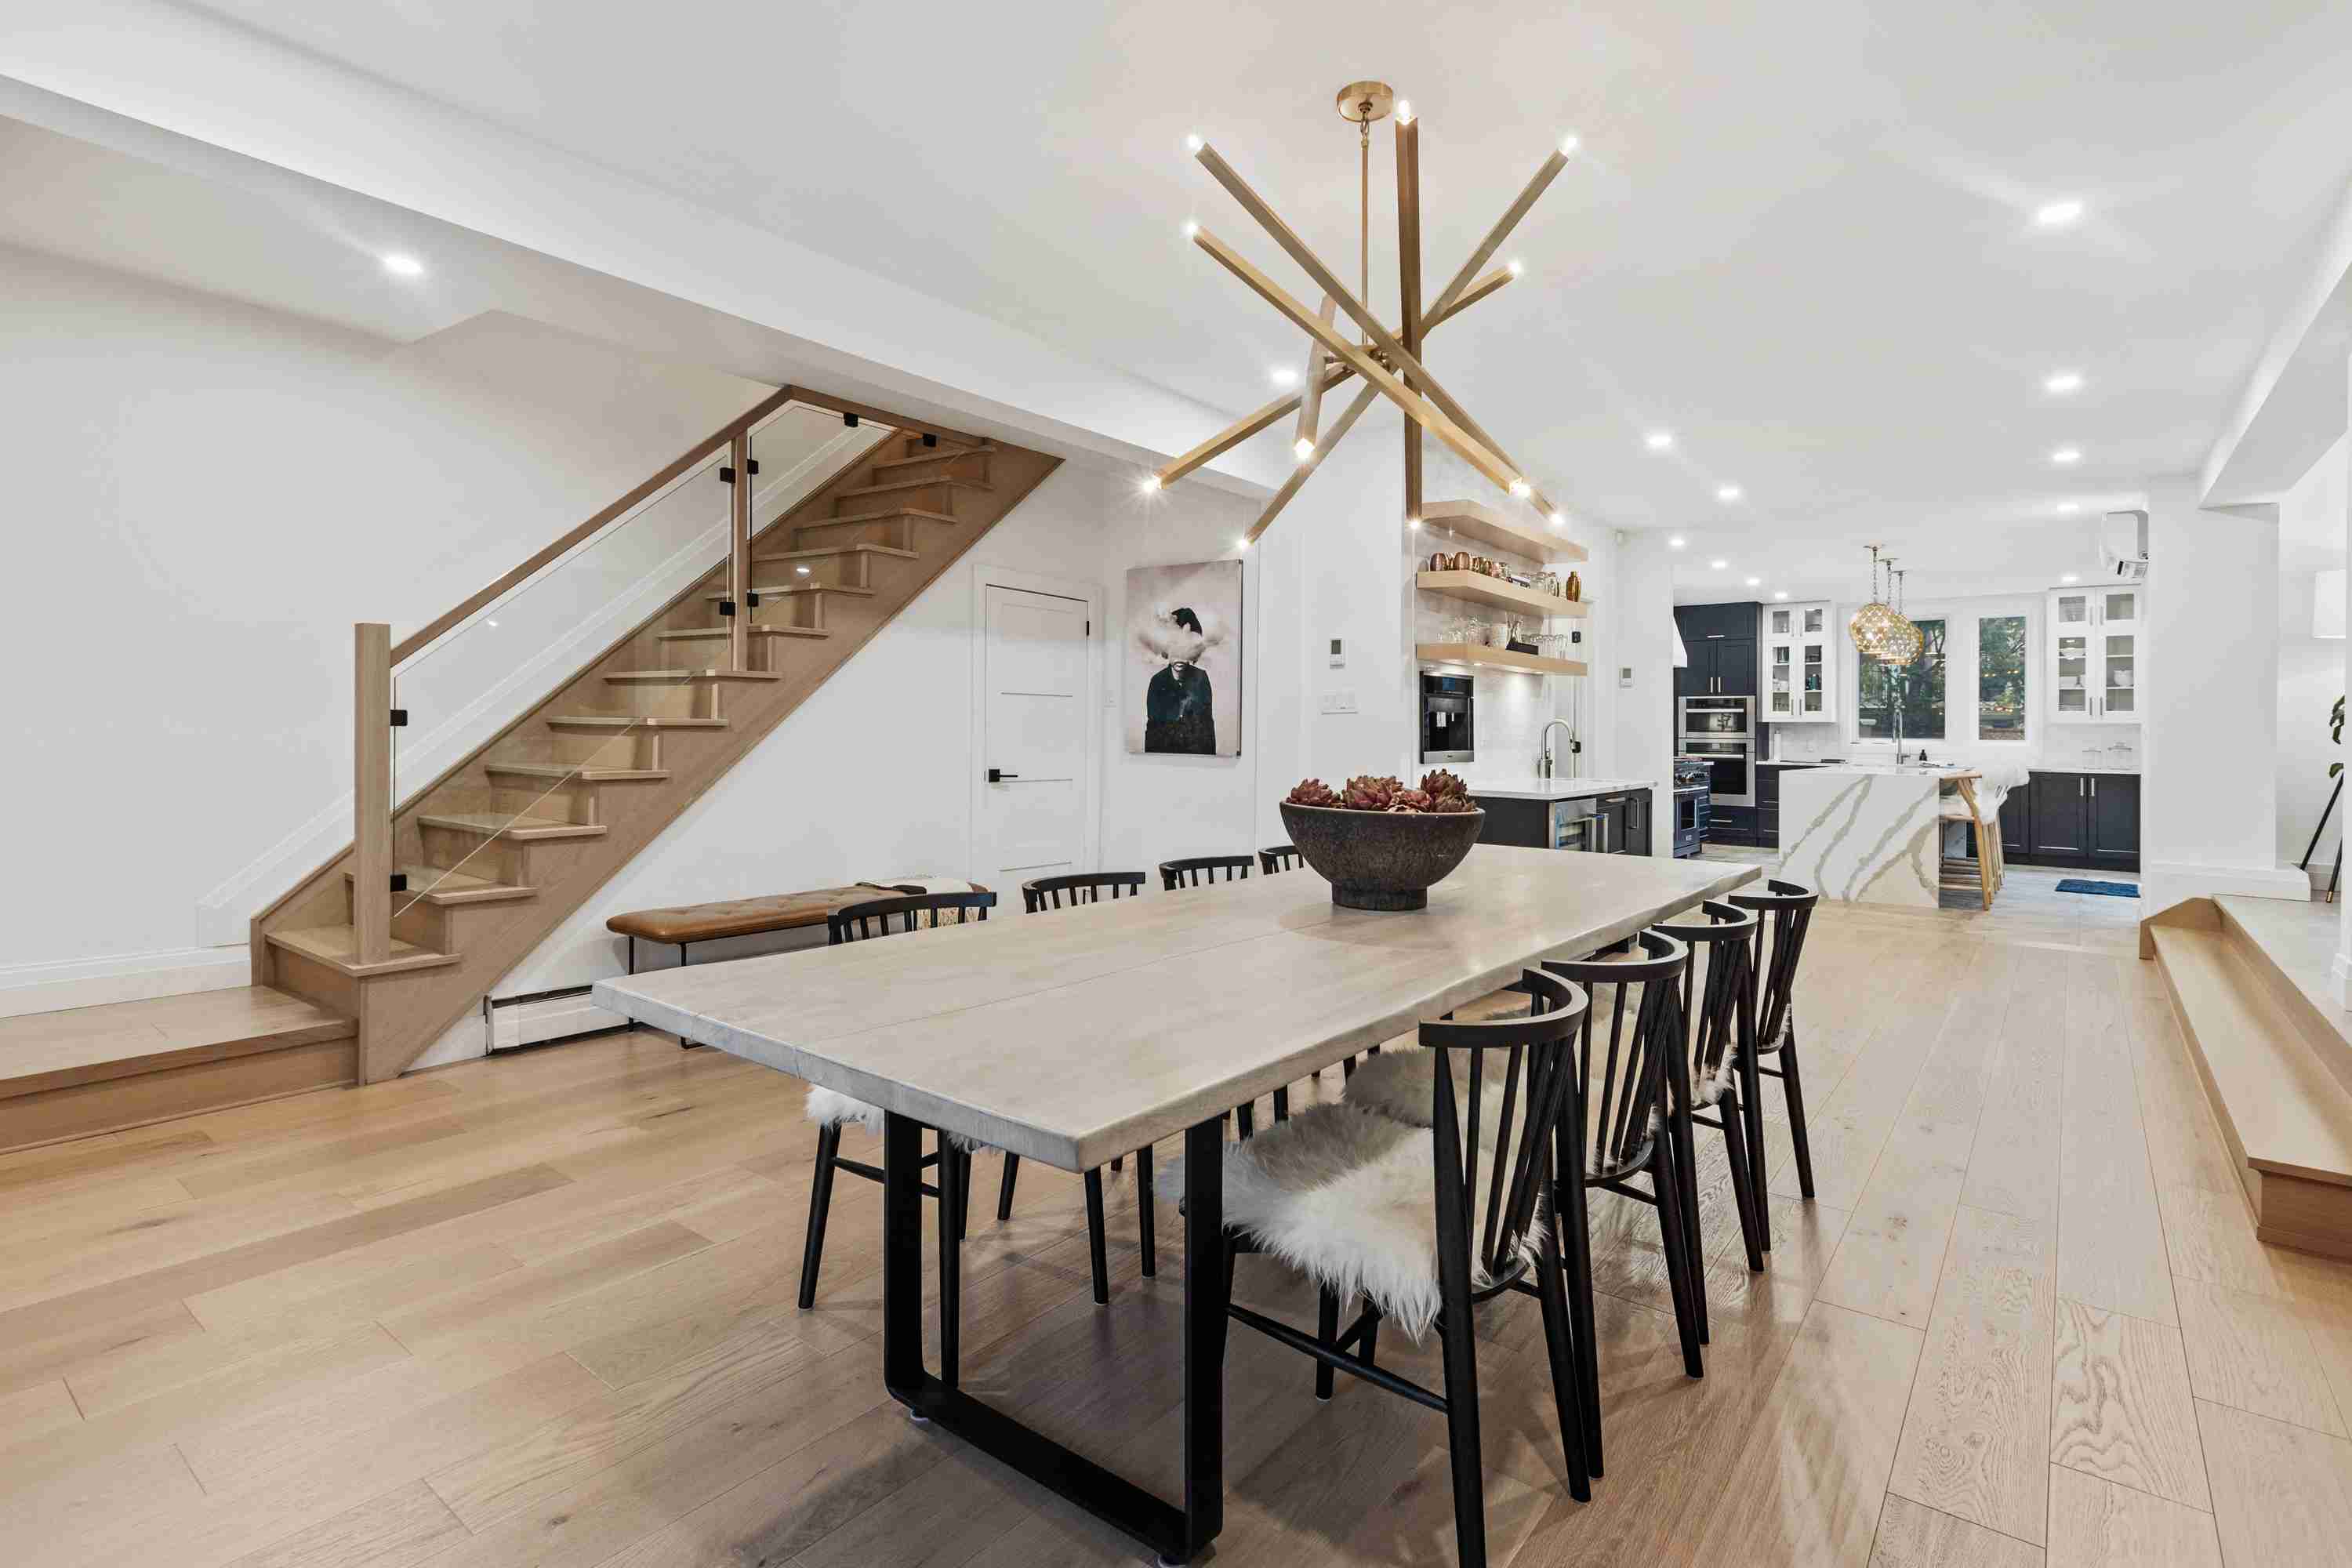 Kuchnia industrialna i styl loftowy w salonie – wspólne akcenty / Salon loft w stylu industrialnym - aranżacje 2021